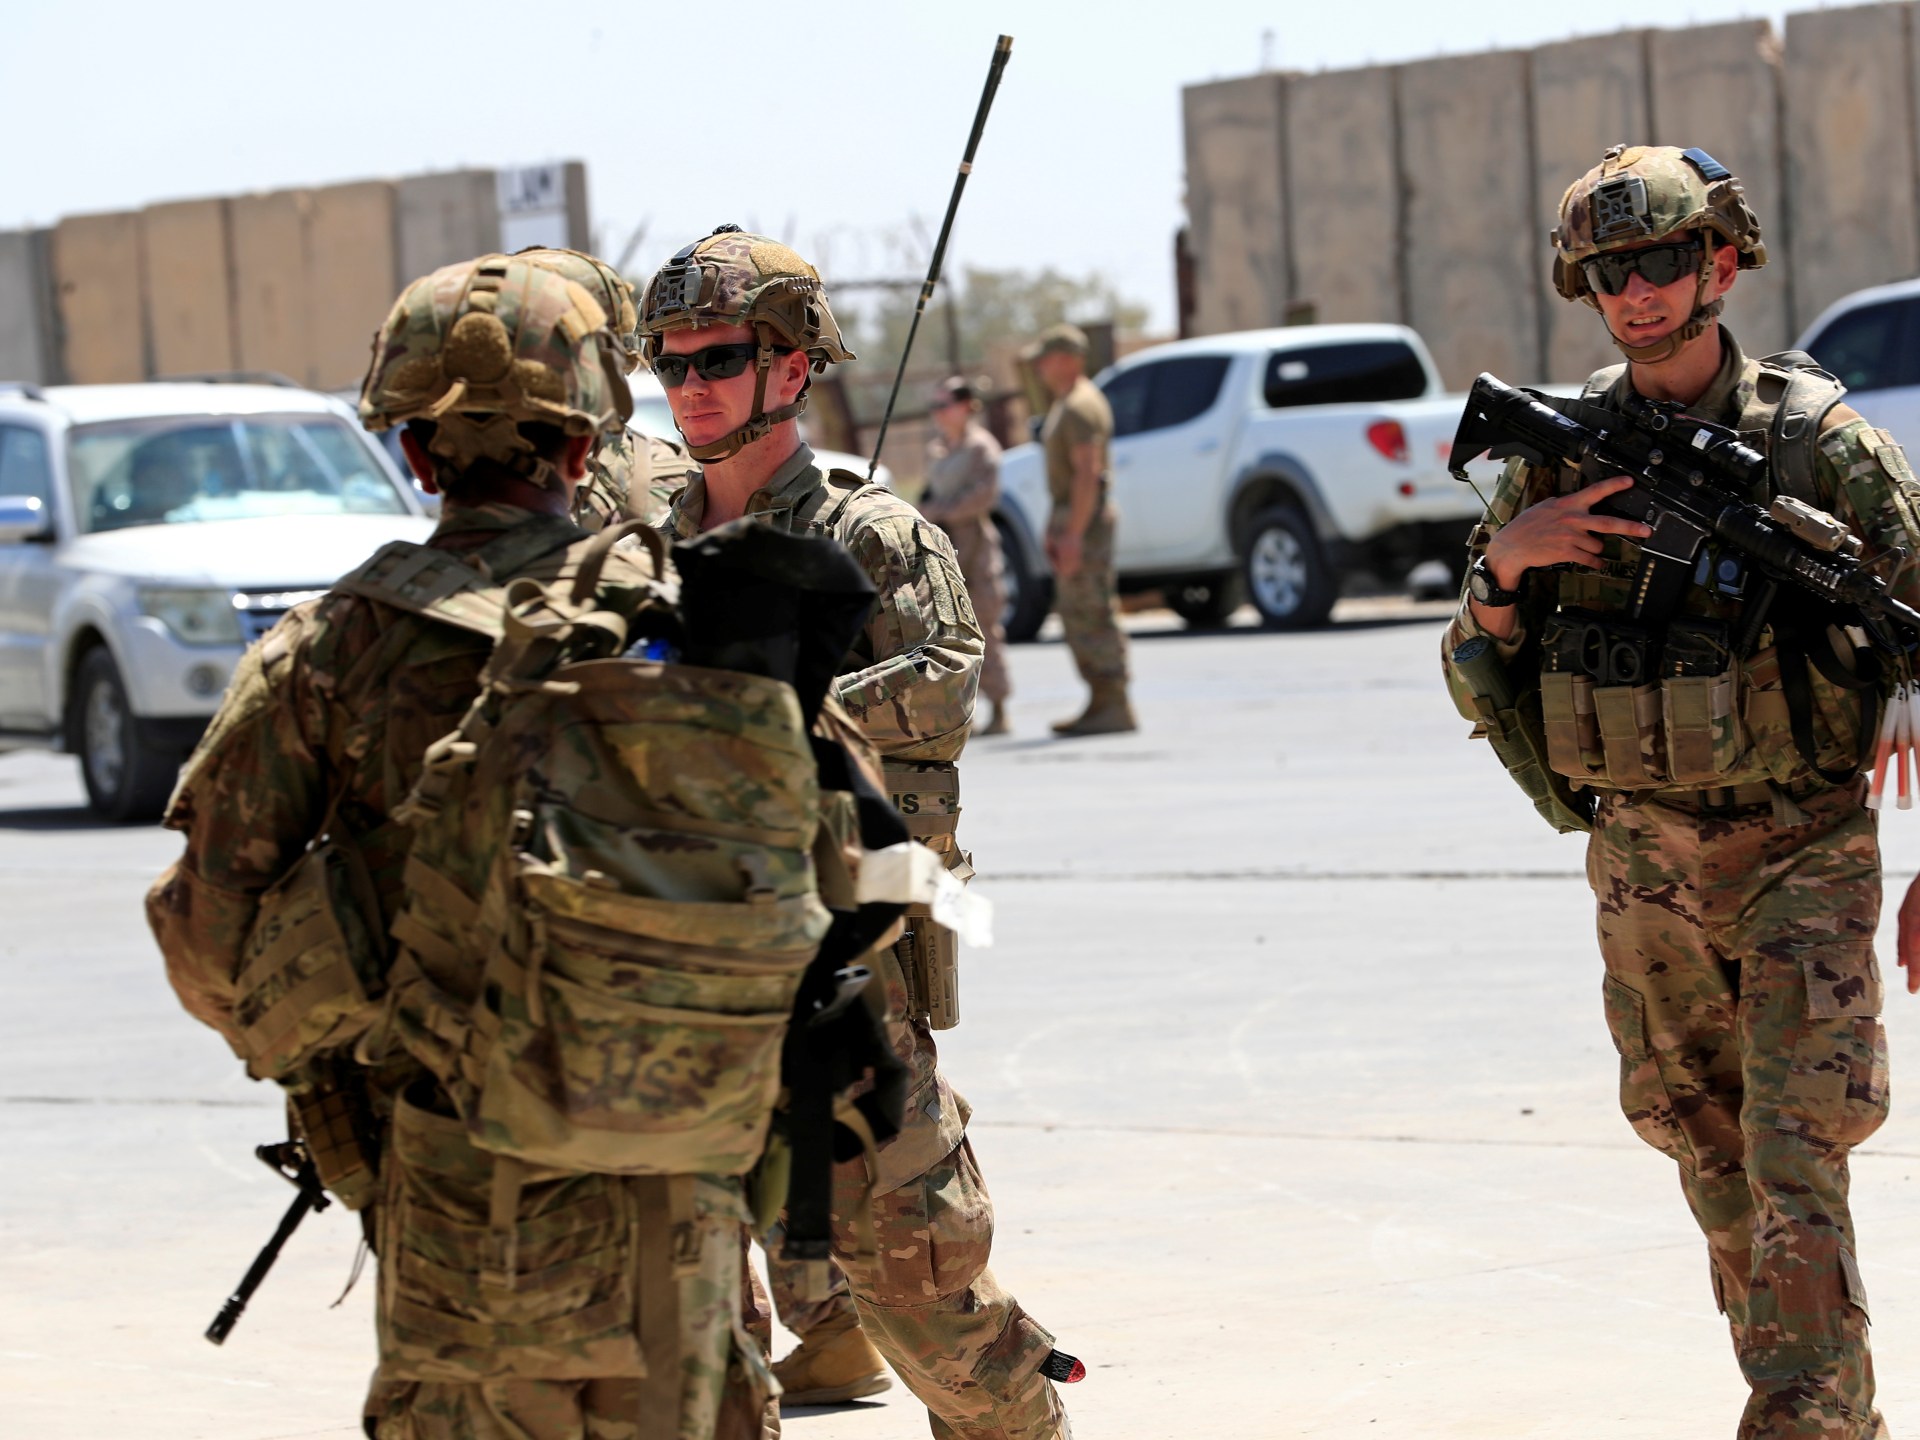 هجوم بمسيّرة على القوات الأميركية بمطار أربيل يوقع إصابات ويعطل الرحلات | أخبار – البوكس نيوز